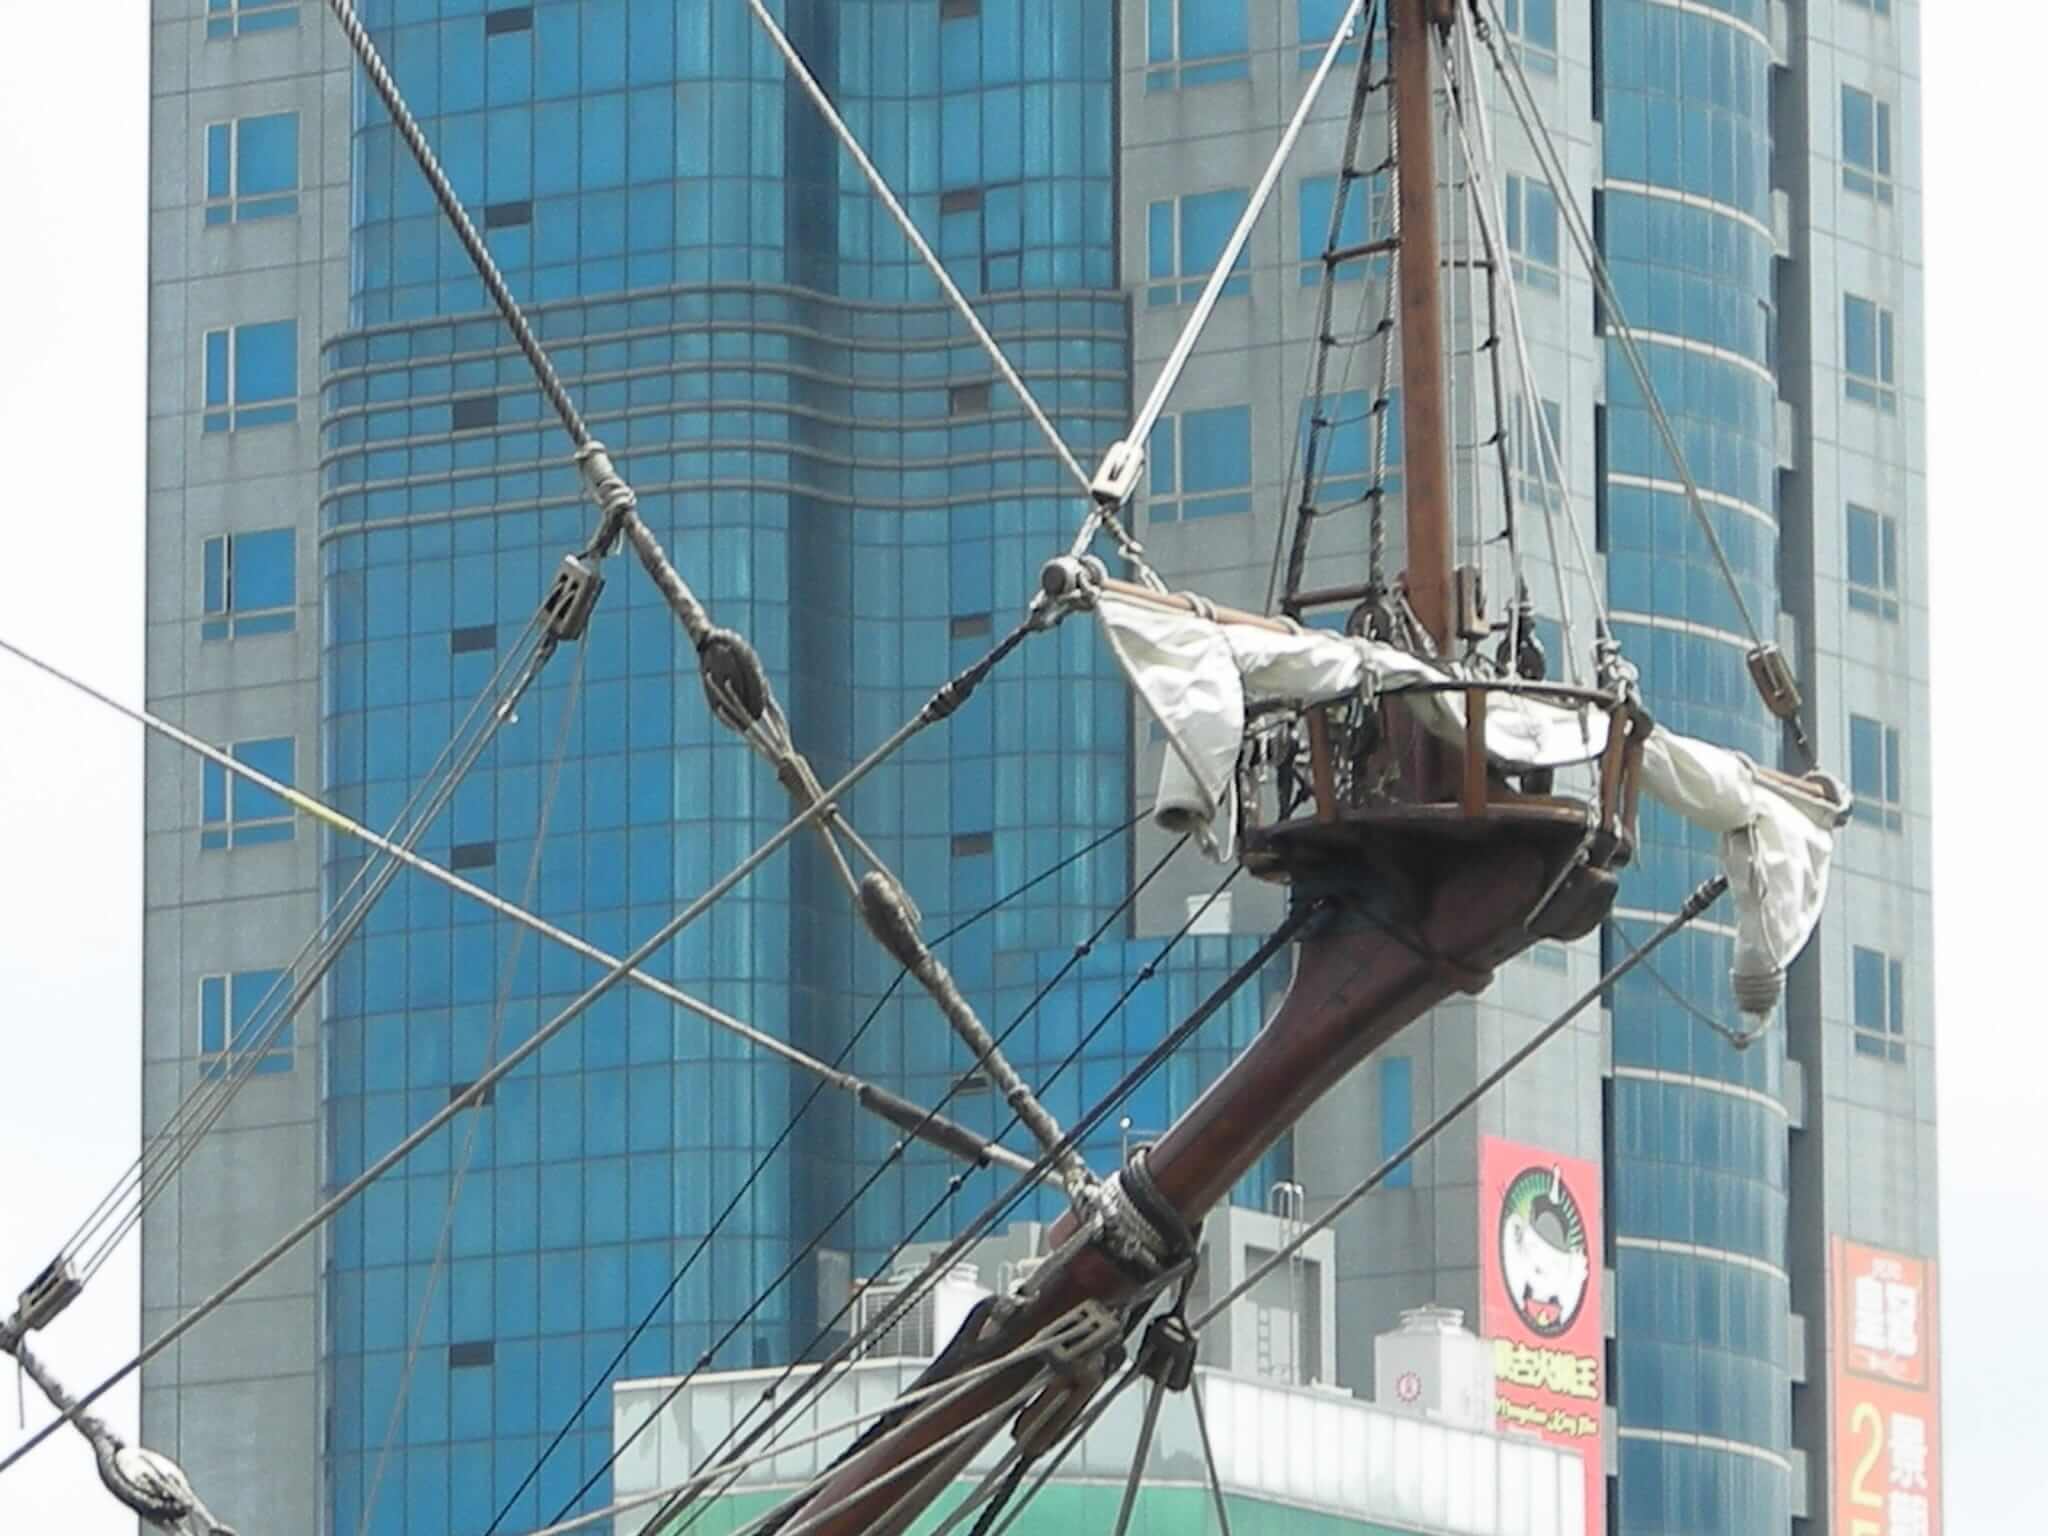 基隆西班牙古帆船